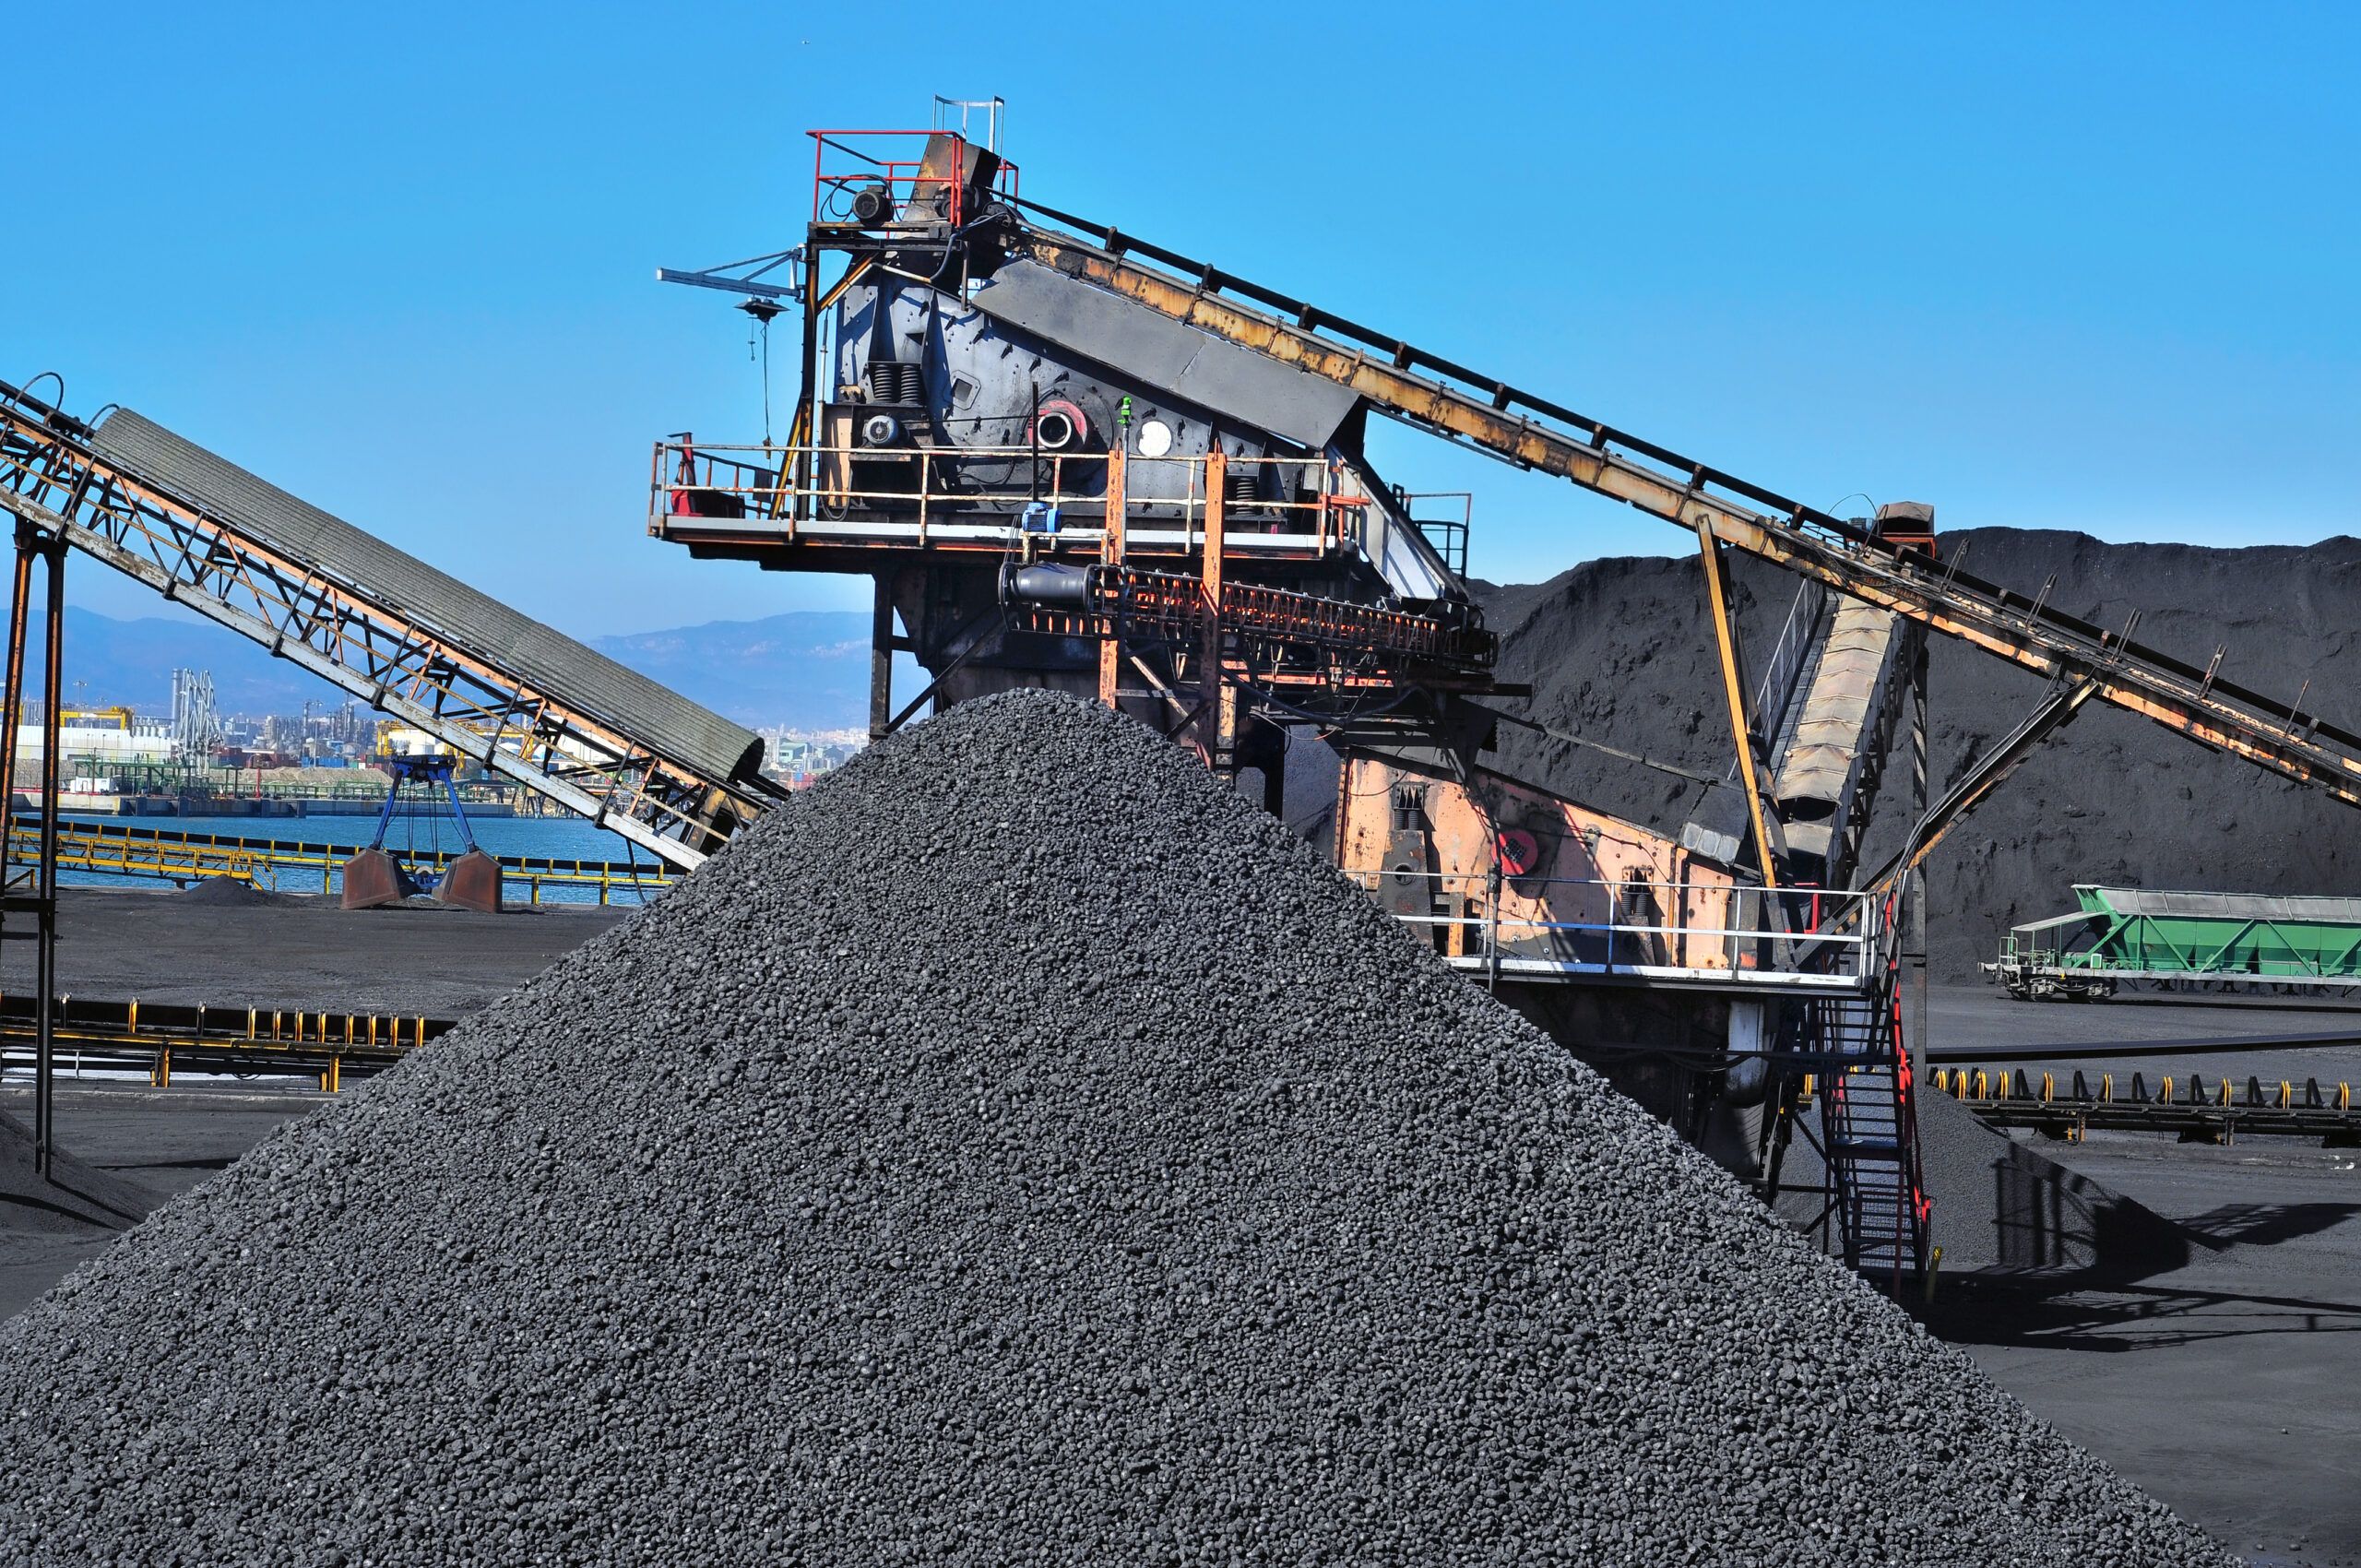 Industria cărbunelui este unul dintre cele mai vechi sectoare de extracție a mineralelor, concentrat în minele reconstruite din Tqibuli. Sursa foto: Dreamstime